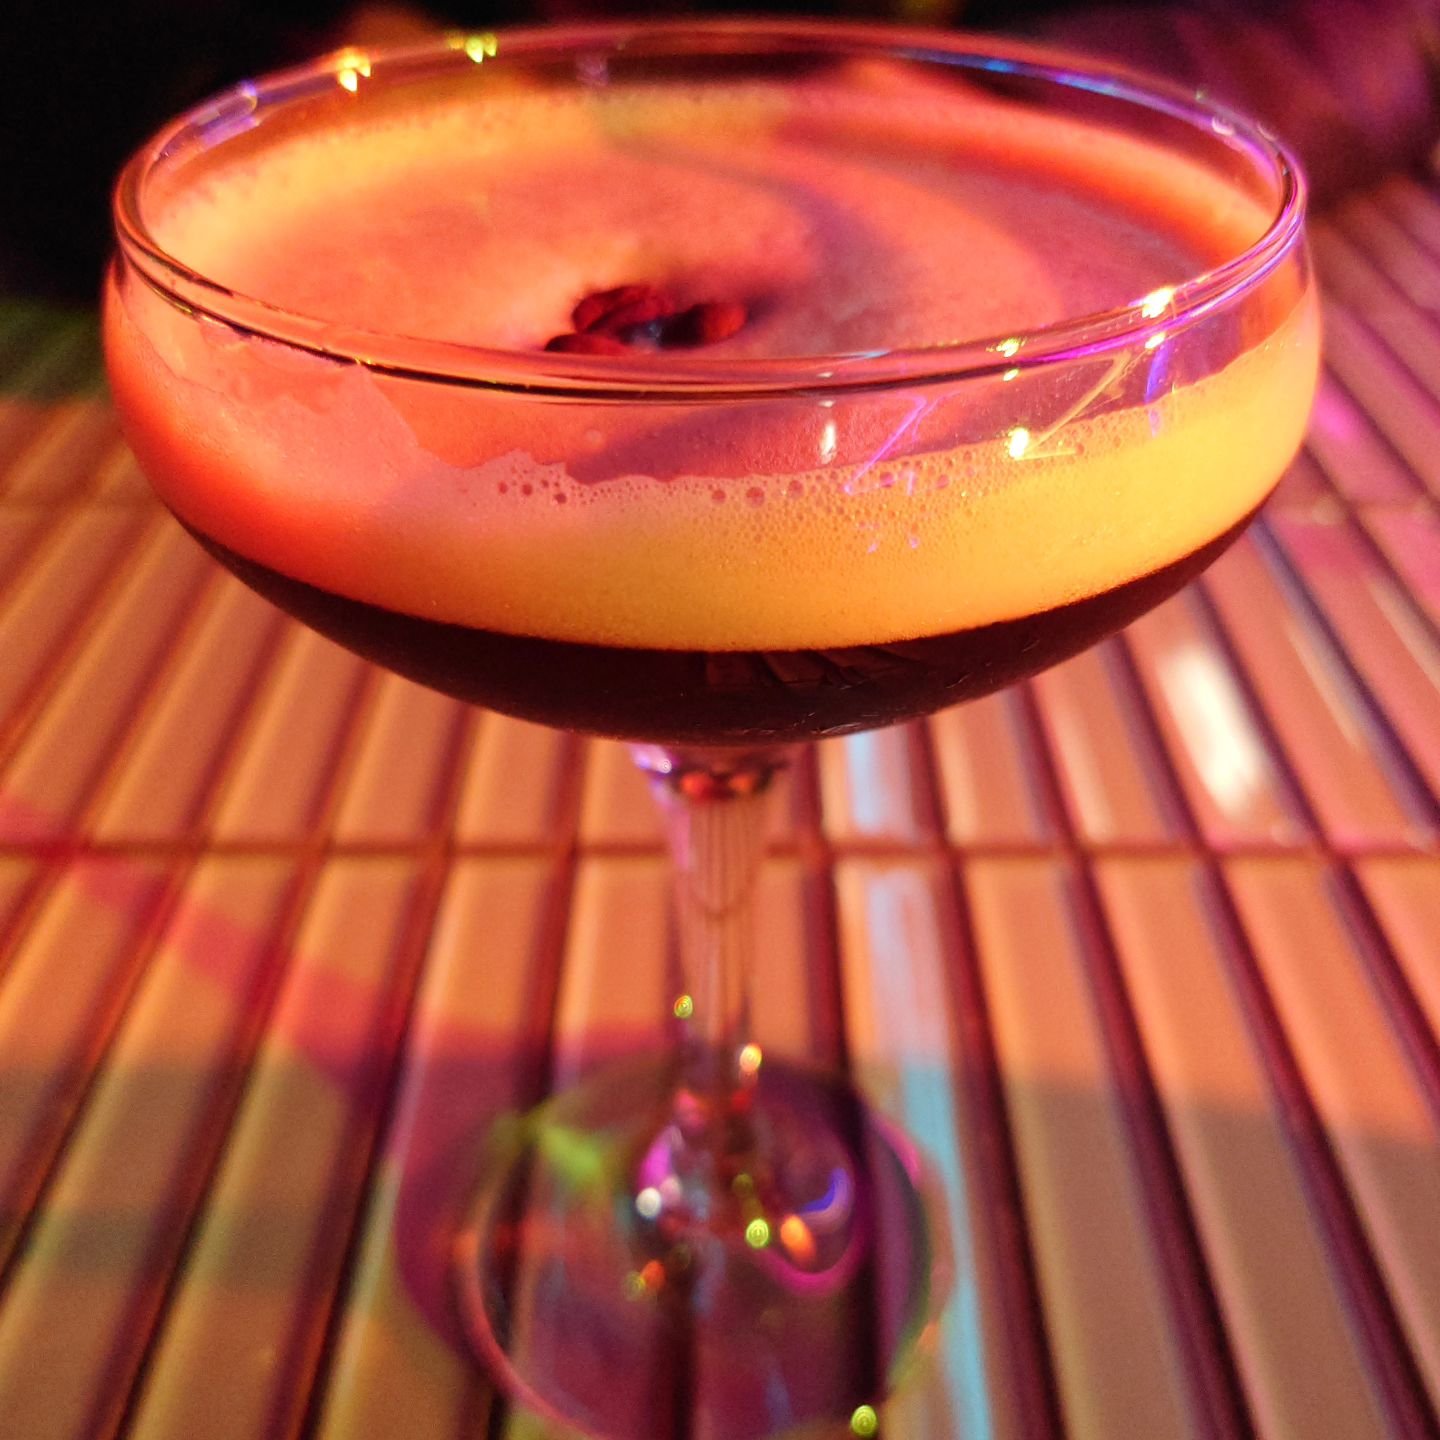 An expressive expresso martini